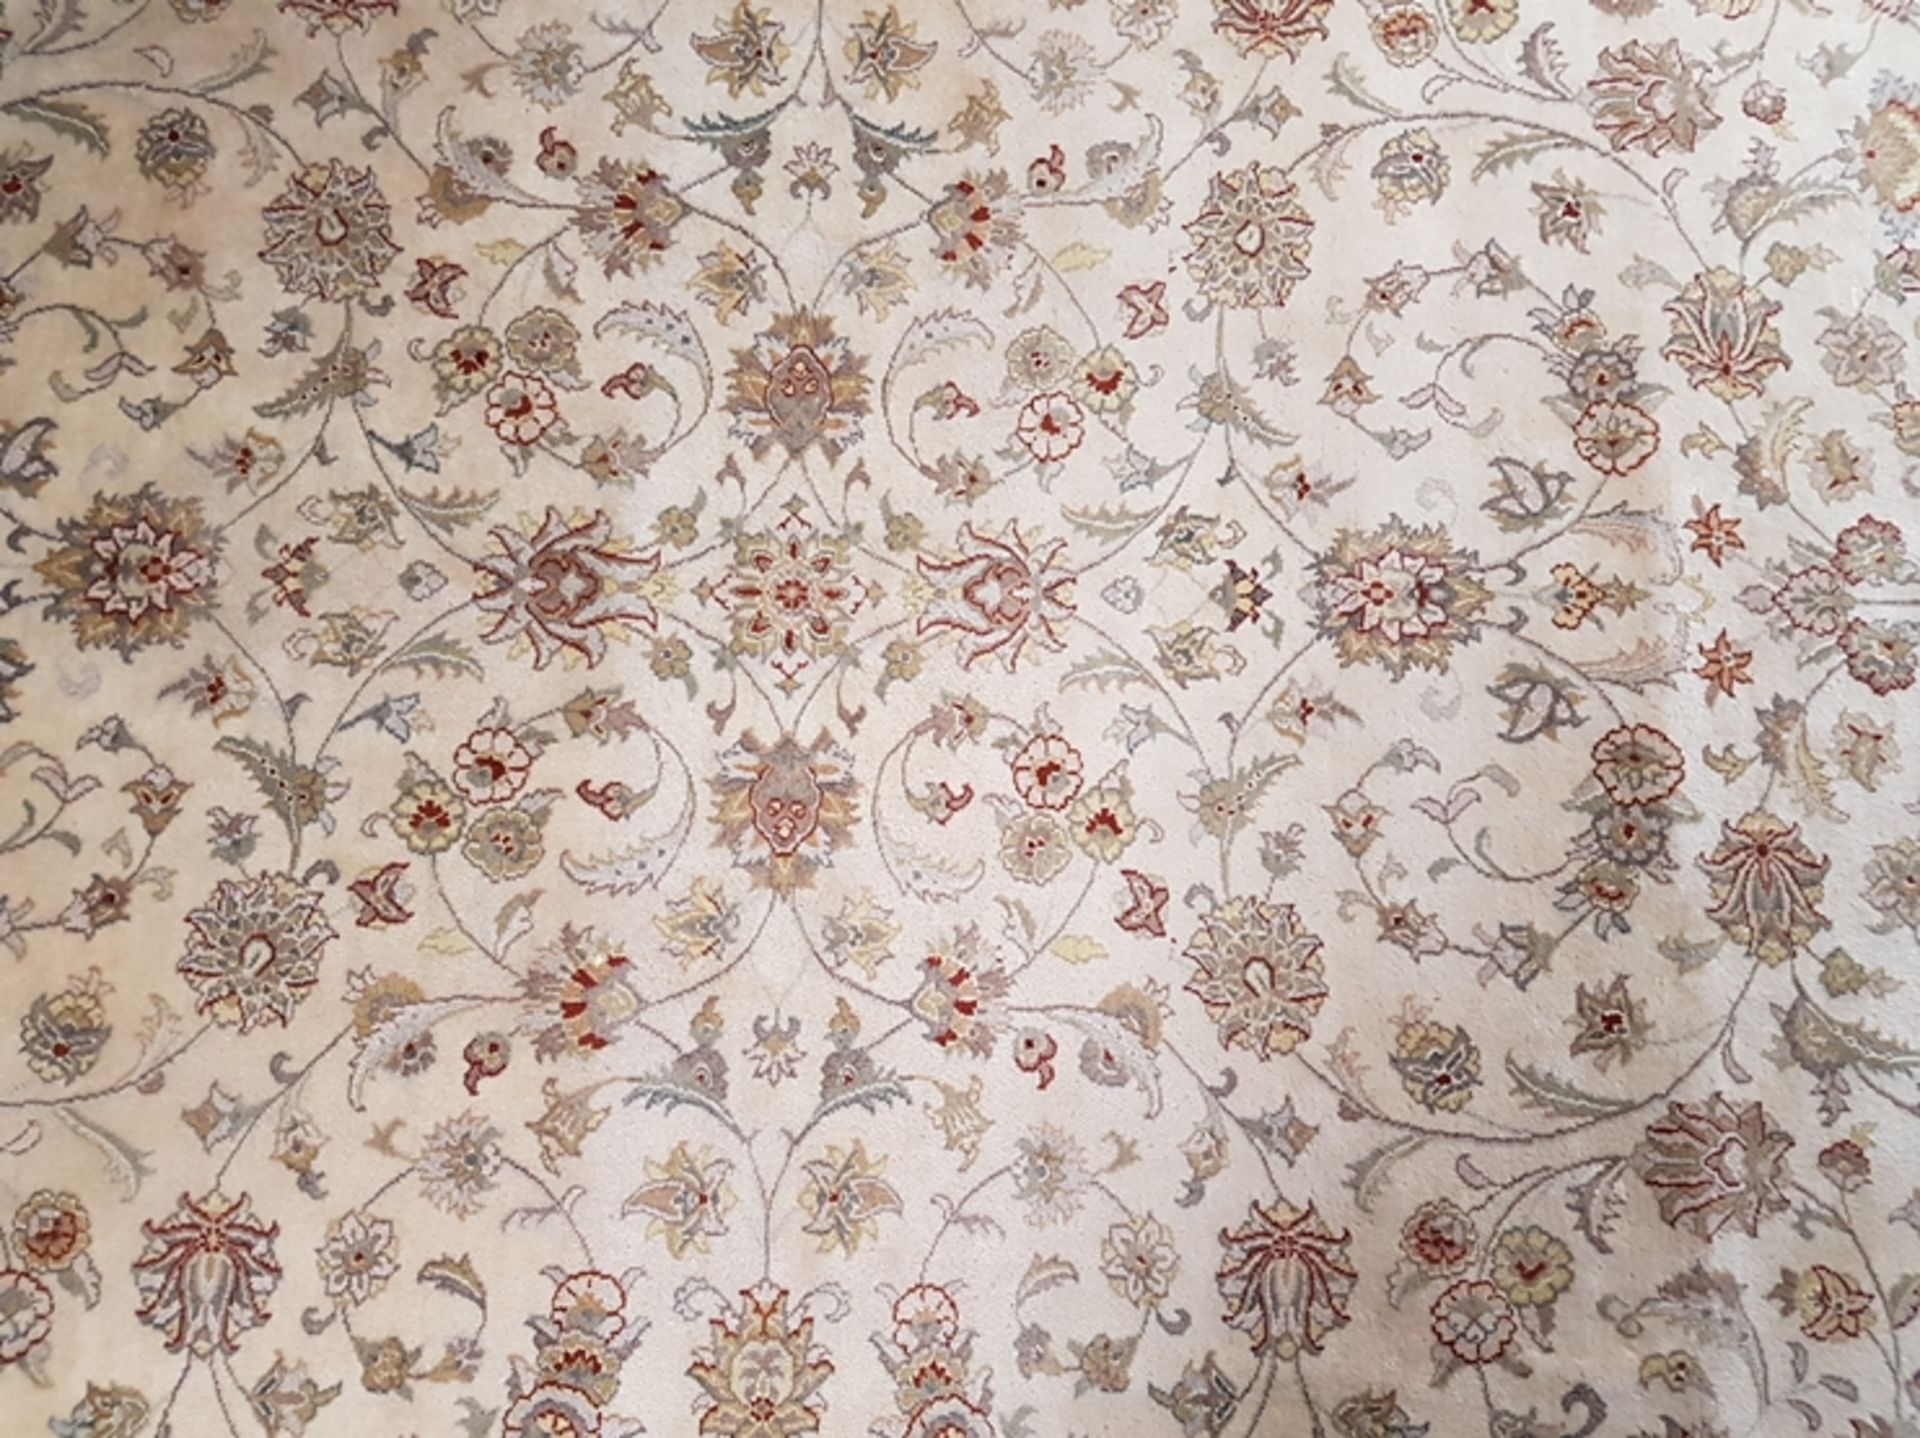 Orientteppich - Kaschmir - Wolle, handgeknüpft, beigegrundig mit roten Bordüren und floralem Muster - Image 2 of 4